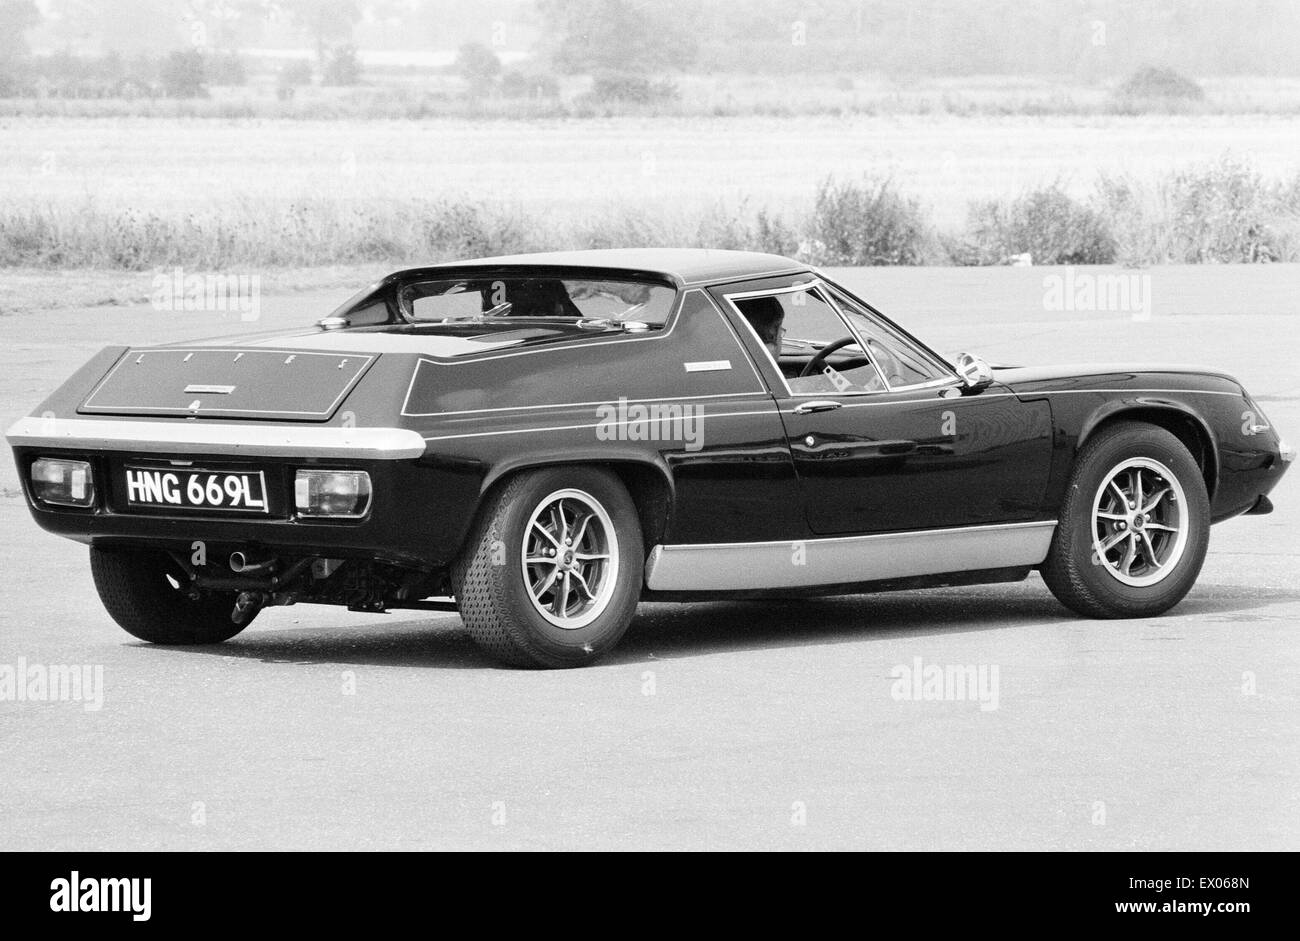 Nuova Lotus auto sportiva, 6 settembre 1972. Piastra di registrazione HNG 669L Foto Stock